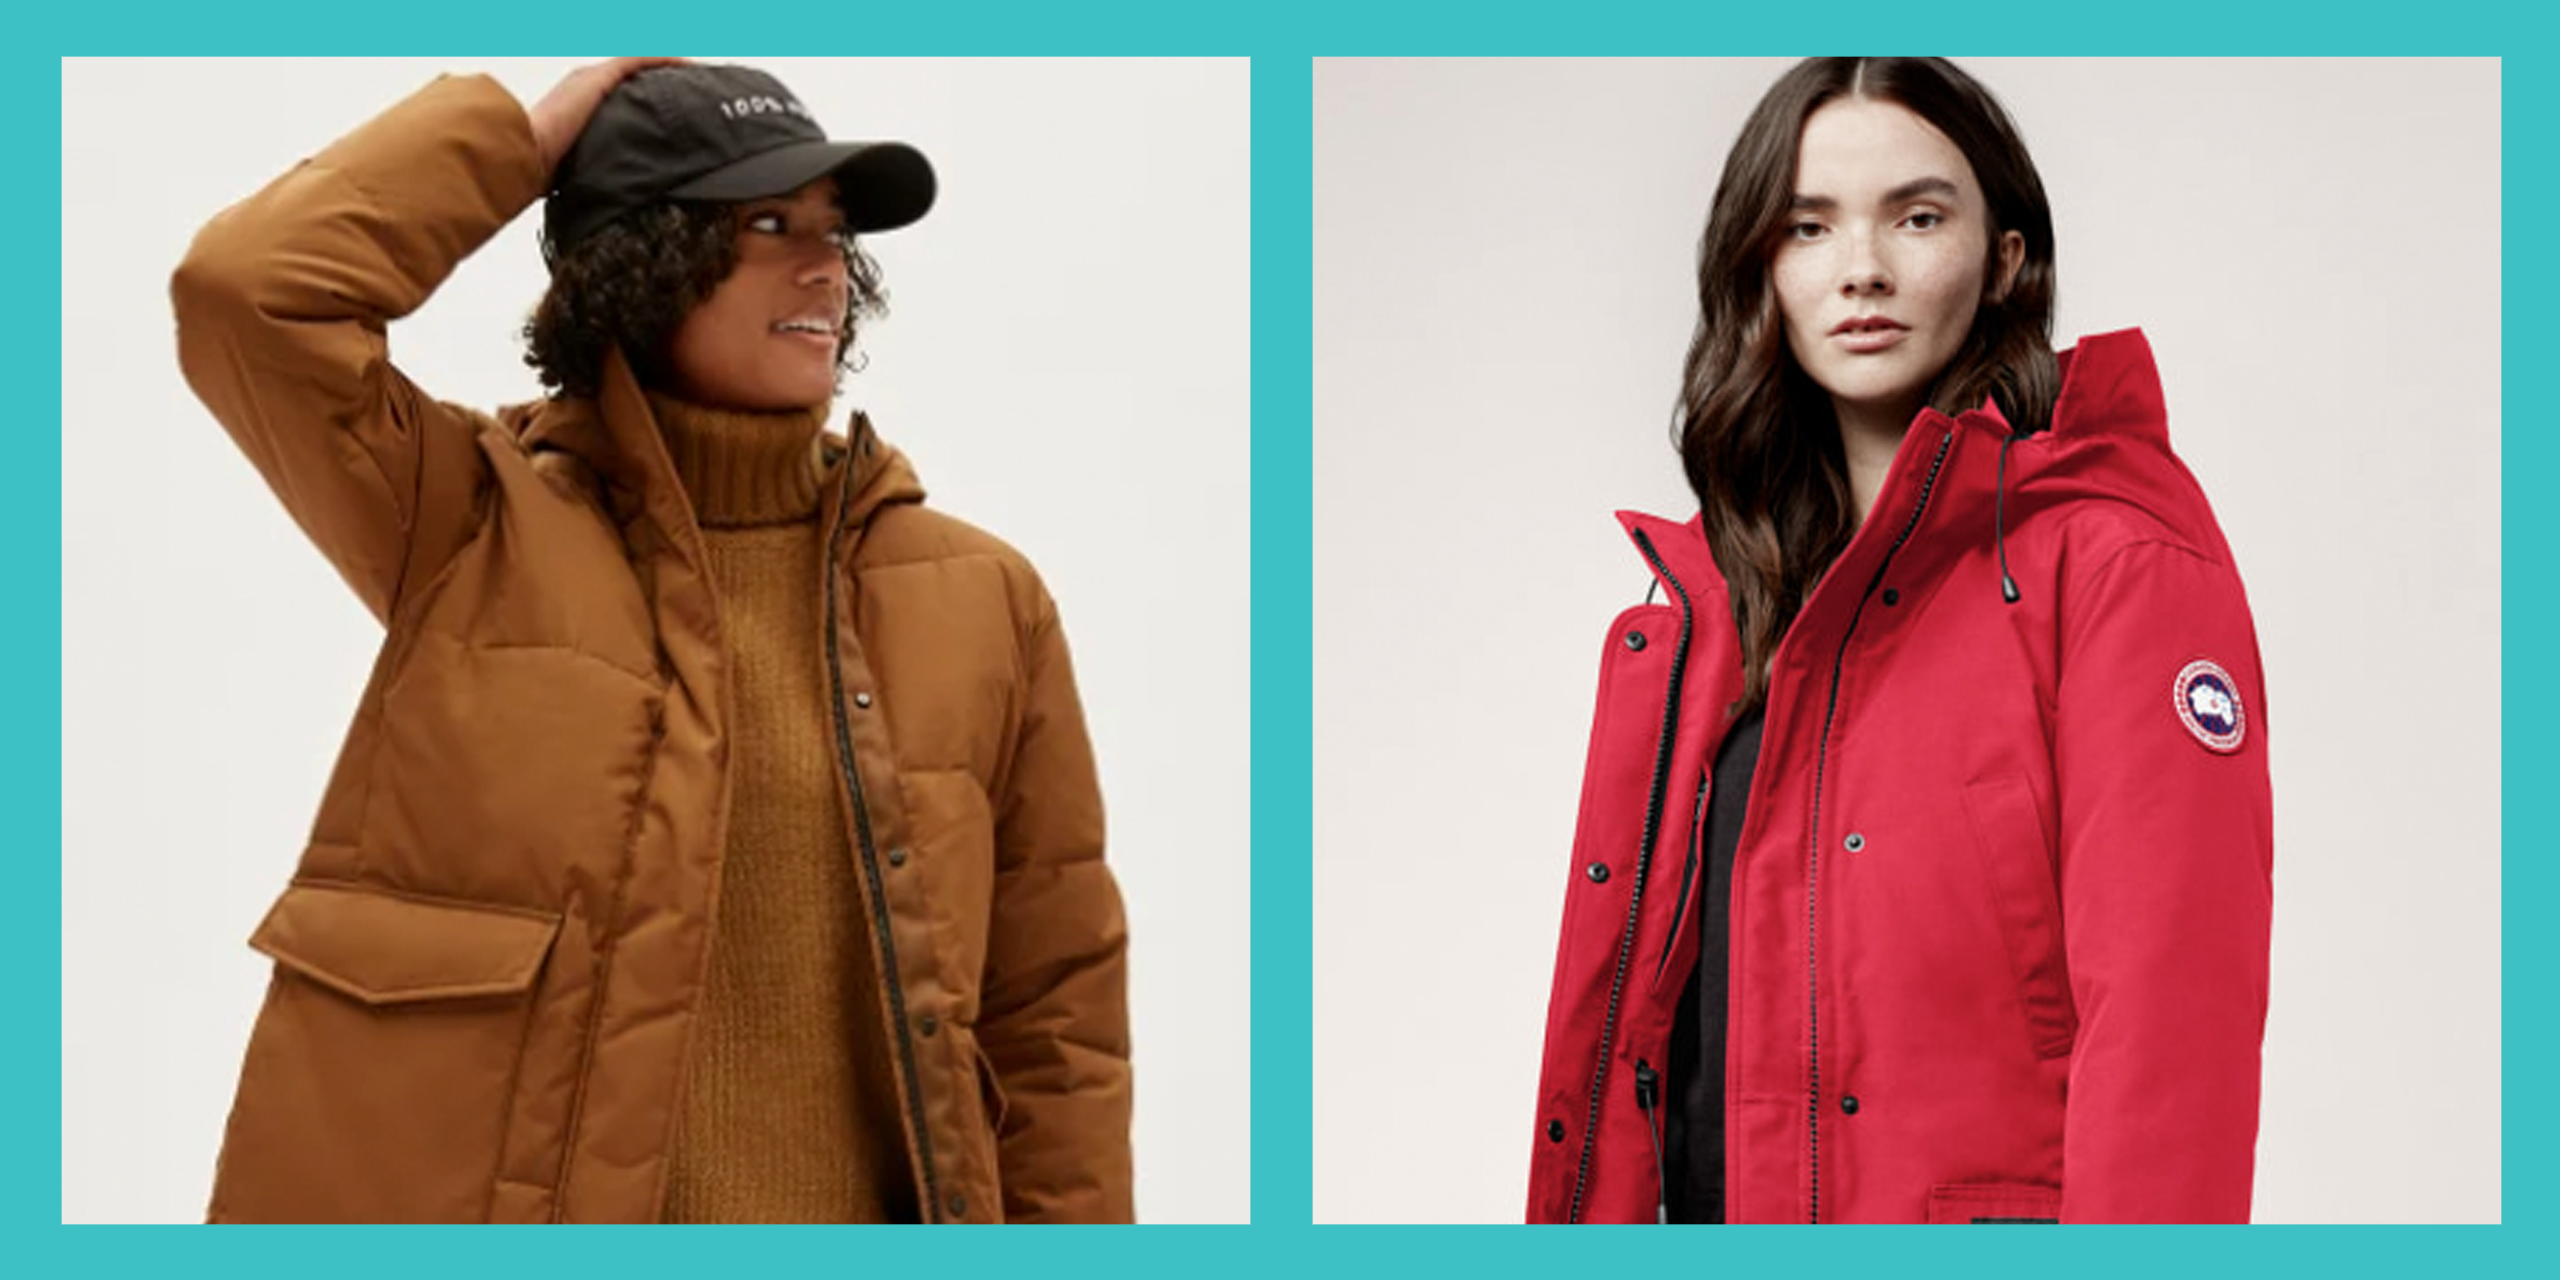 Women's Casual Fur Lining Jacket Ladies Winter Warm Hooded Parka Coat Outwear US